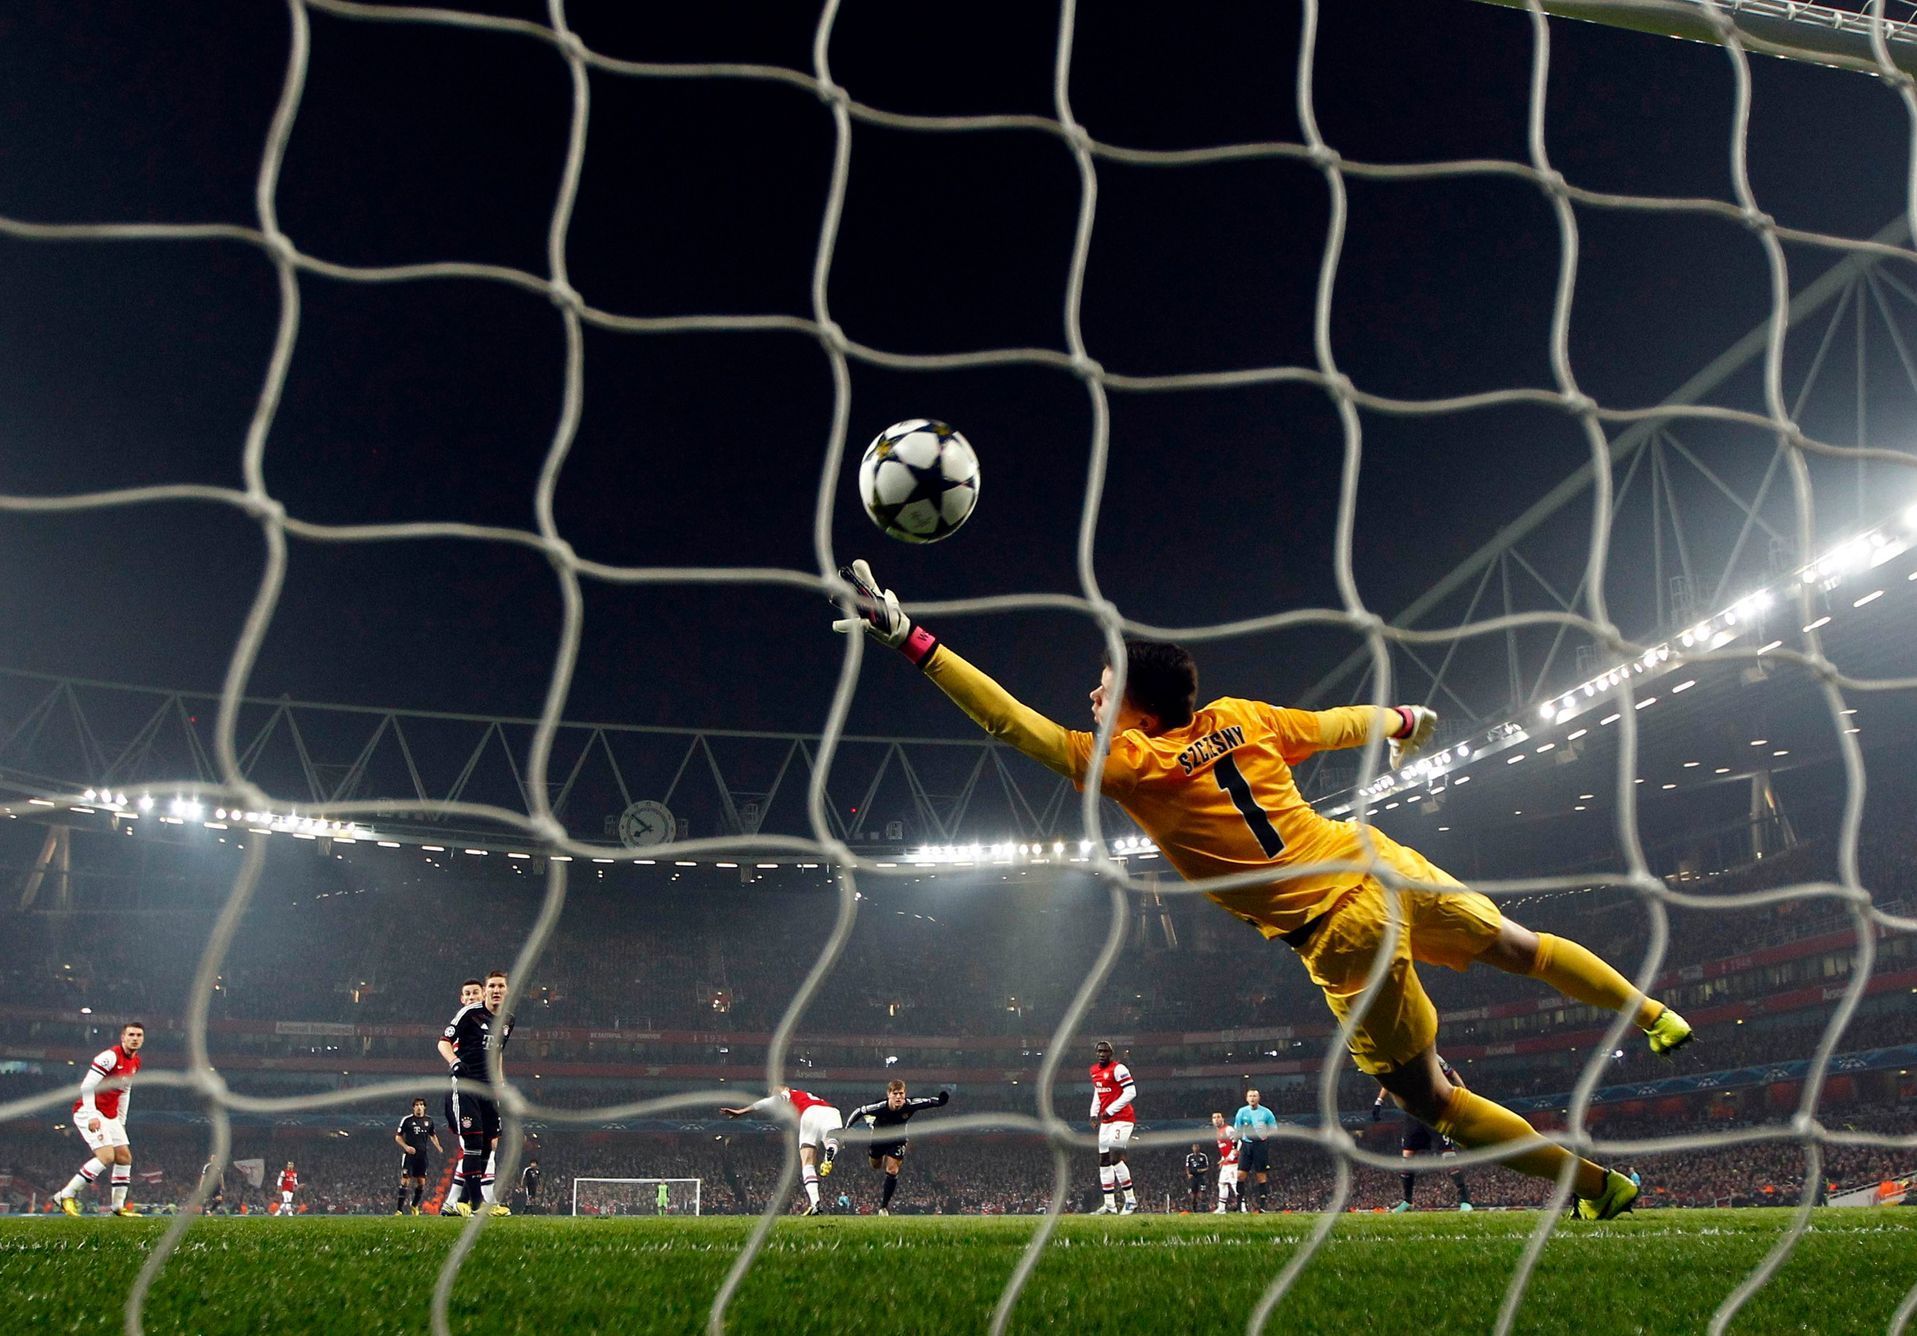 Fotbal, Liga mistrů Arsenal - Bayern: Wojciech Szczesny